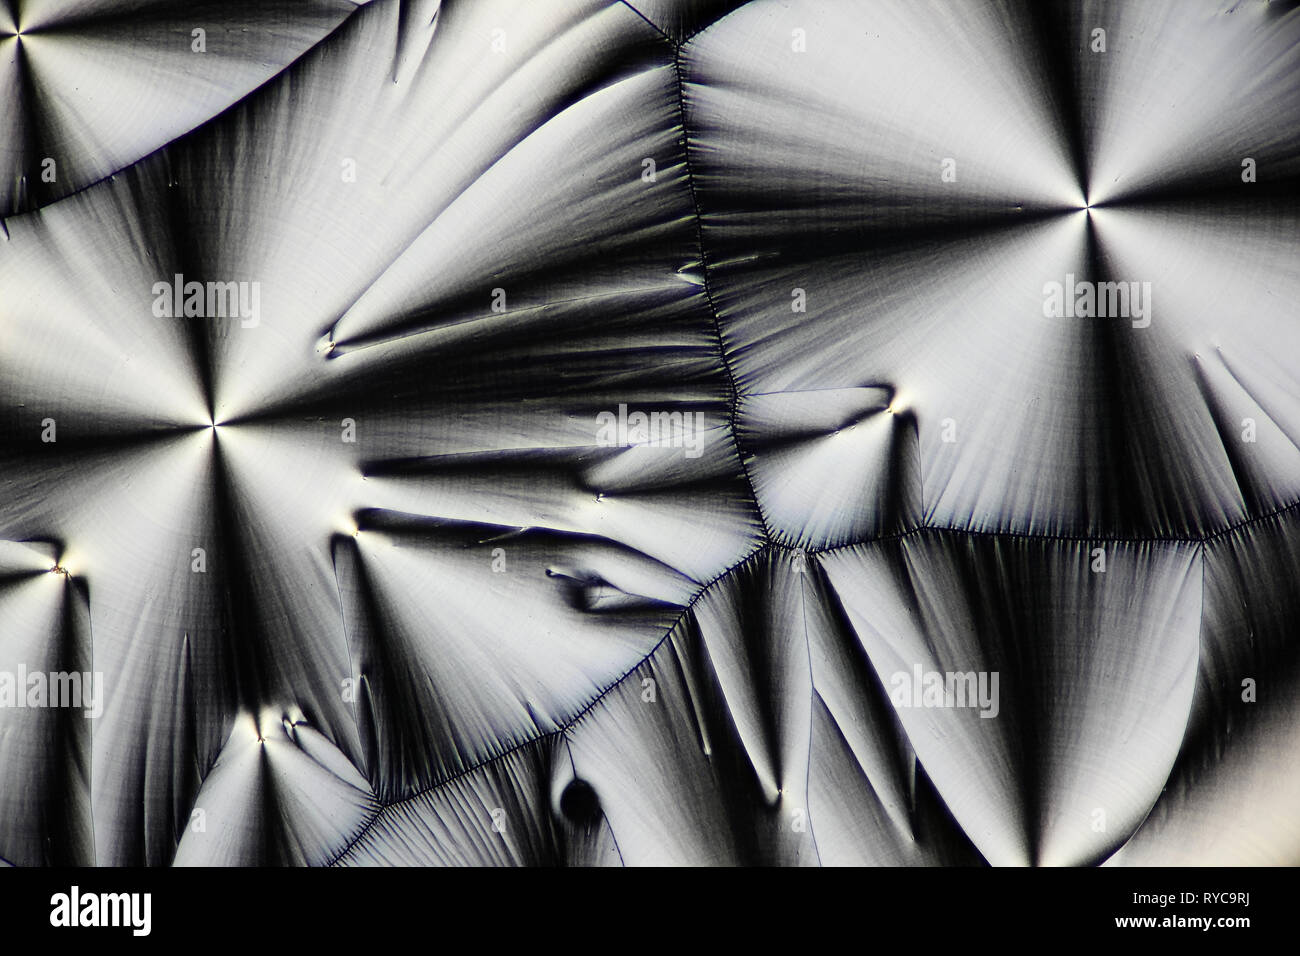 Chemie und Kunst Dies ist Ascorbinsäure, bekannt als Vitamin C, in kristallisierter Form fotografiert bekannt Stockfoto